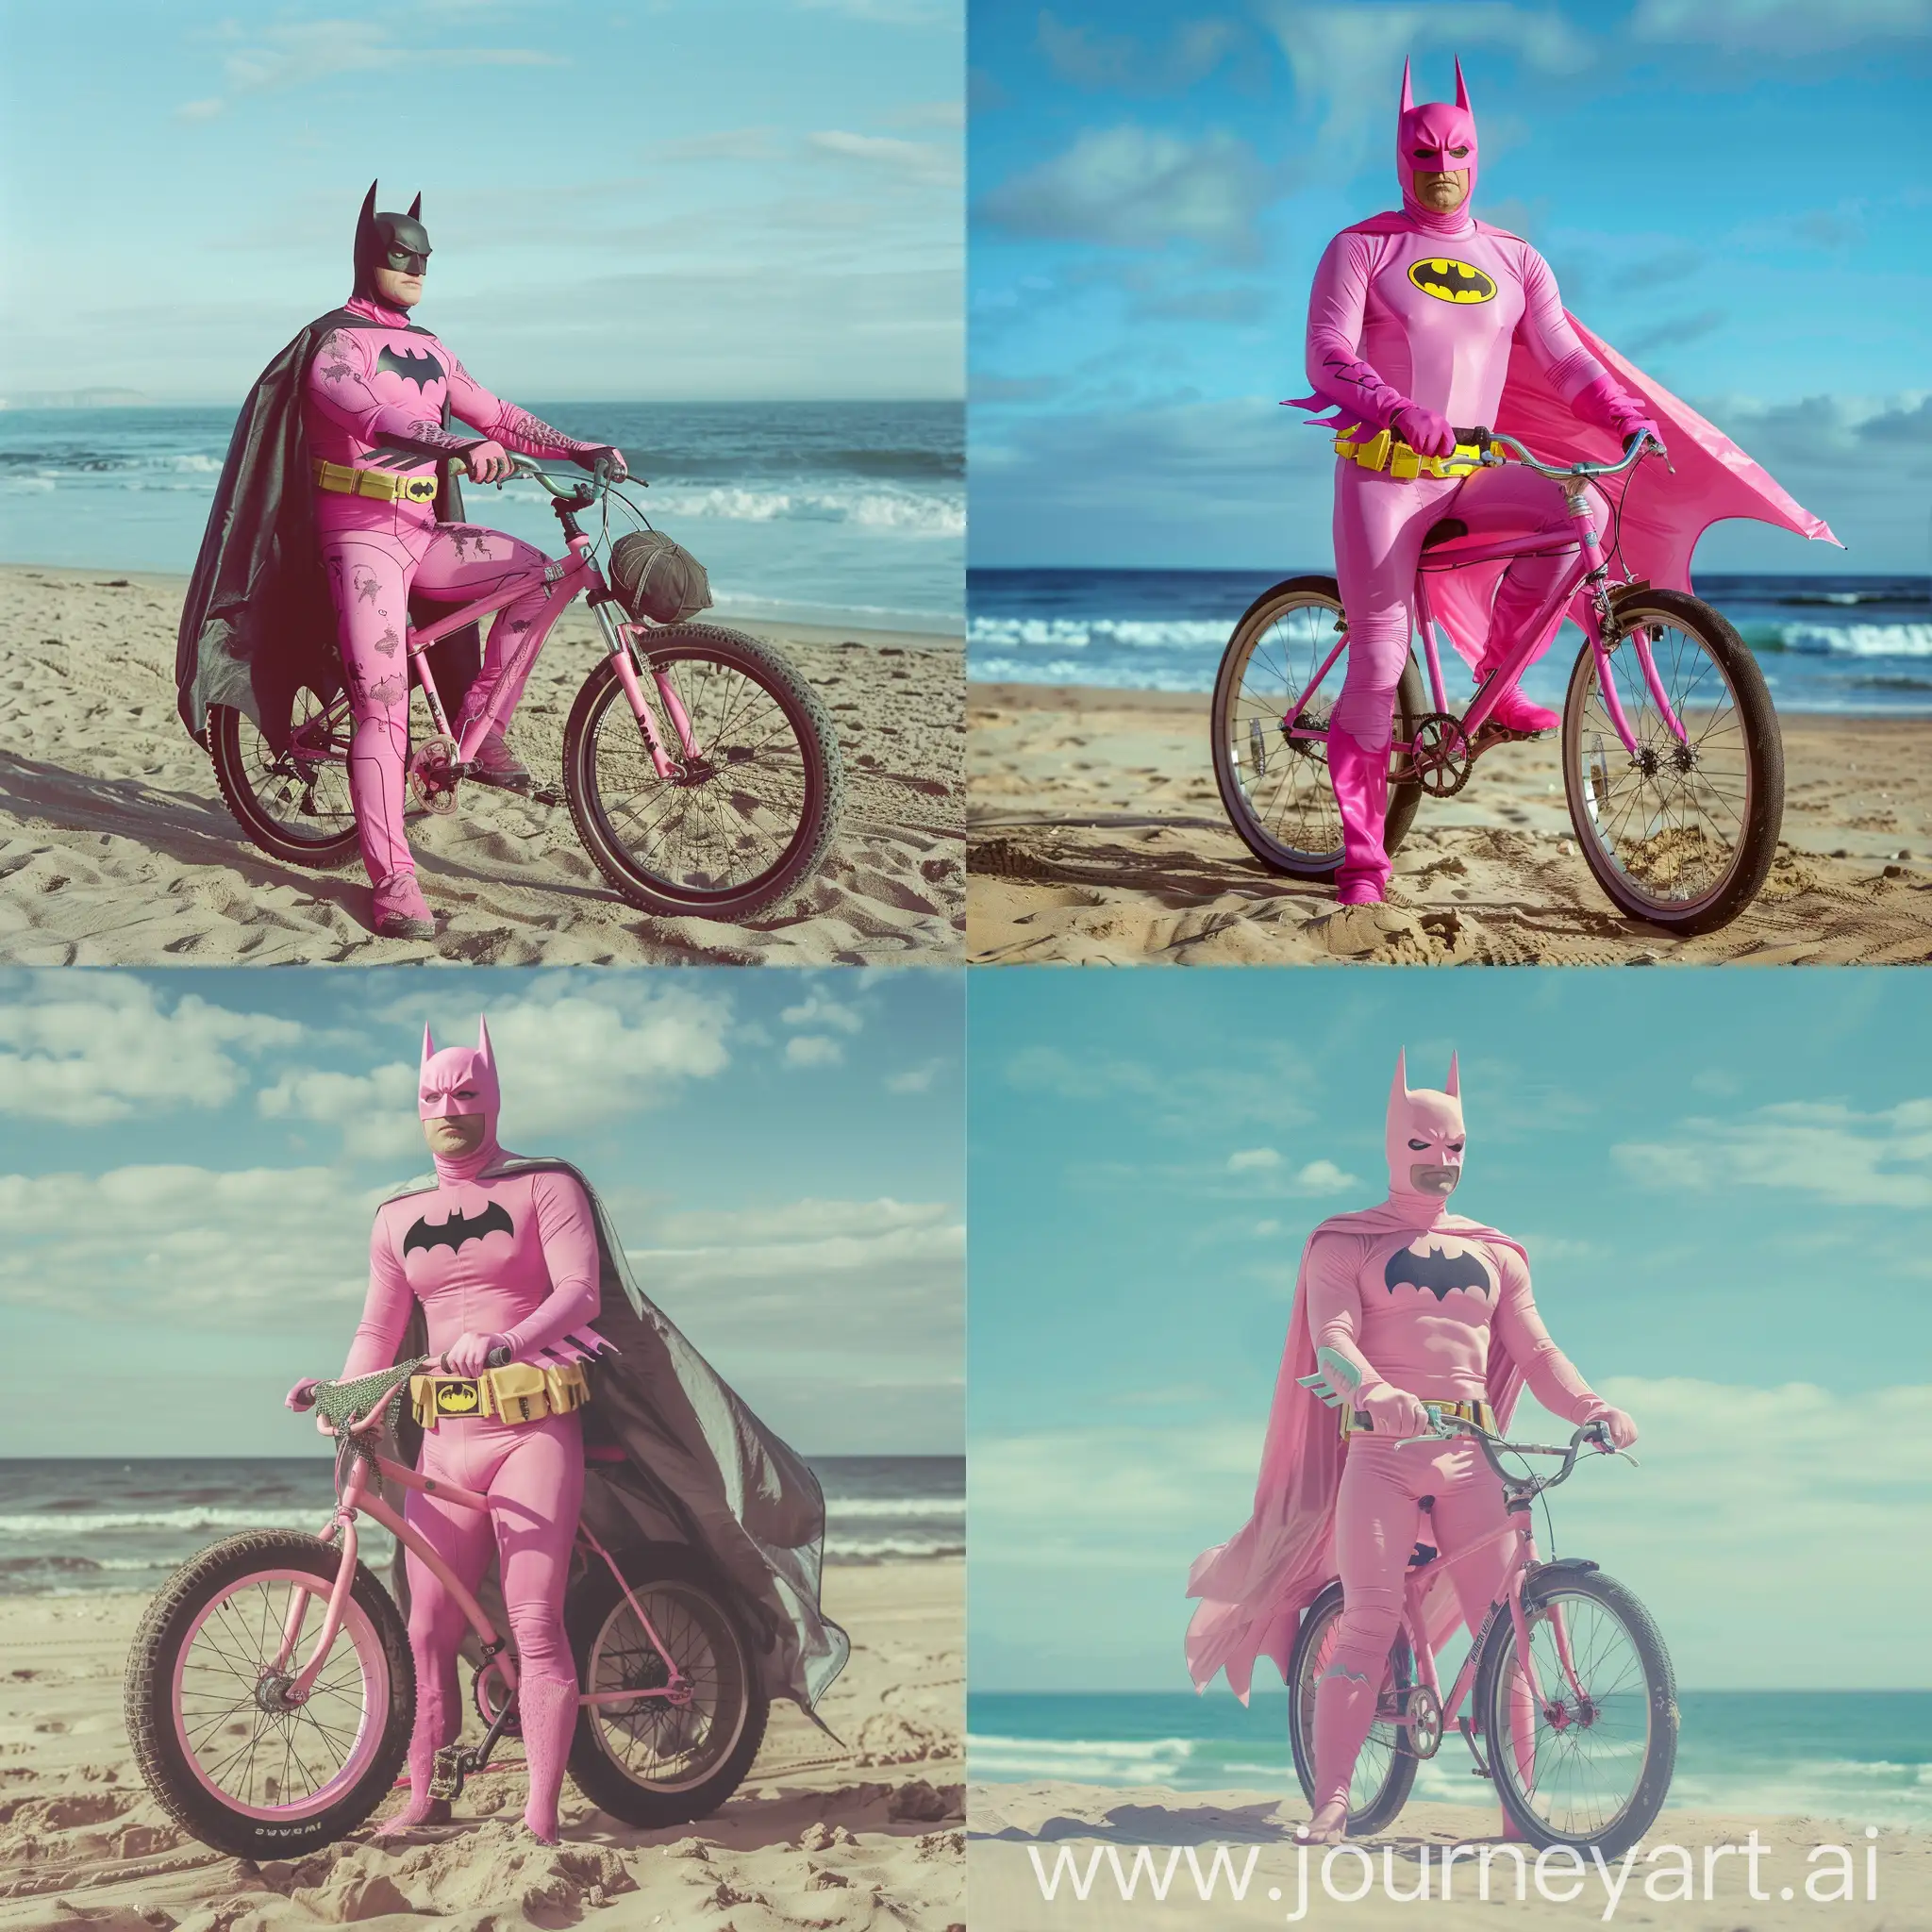 pink batman on a bike on the beach